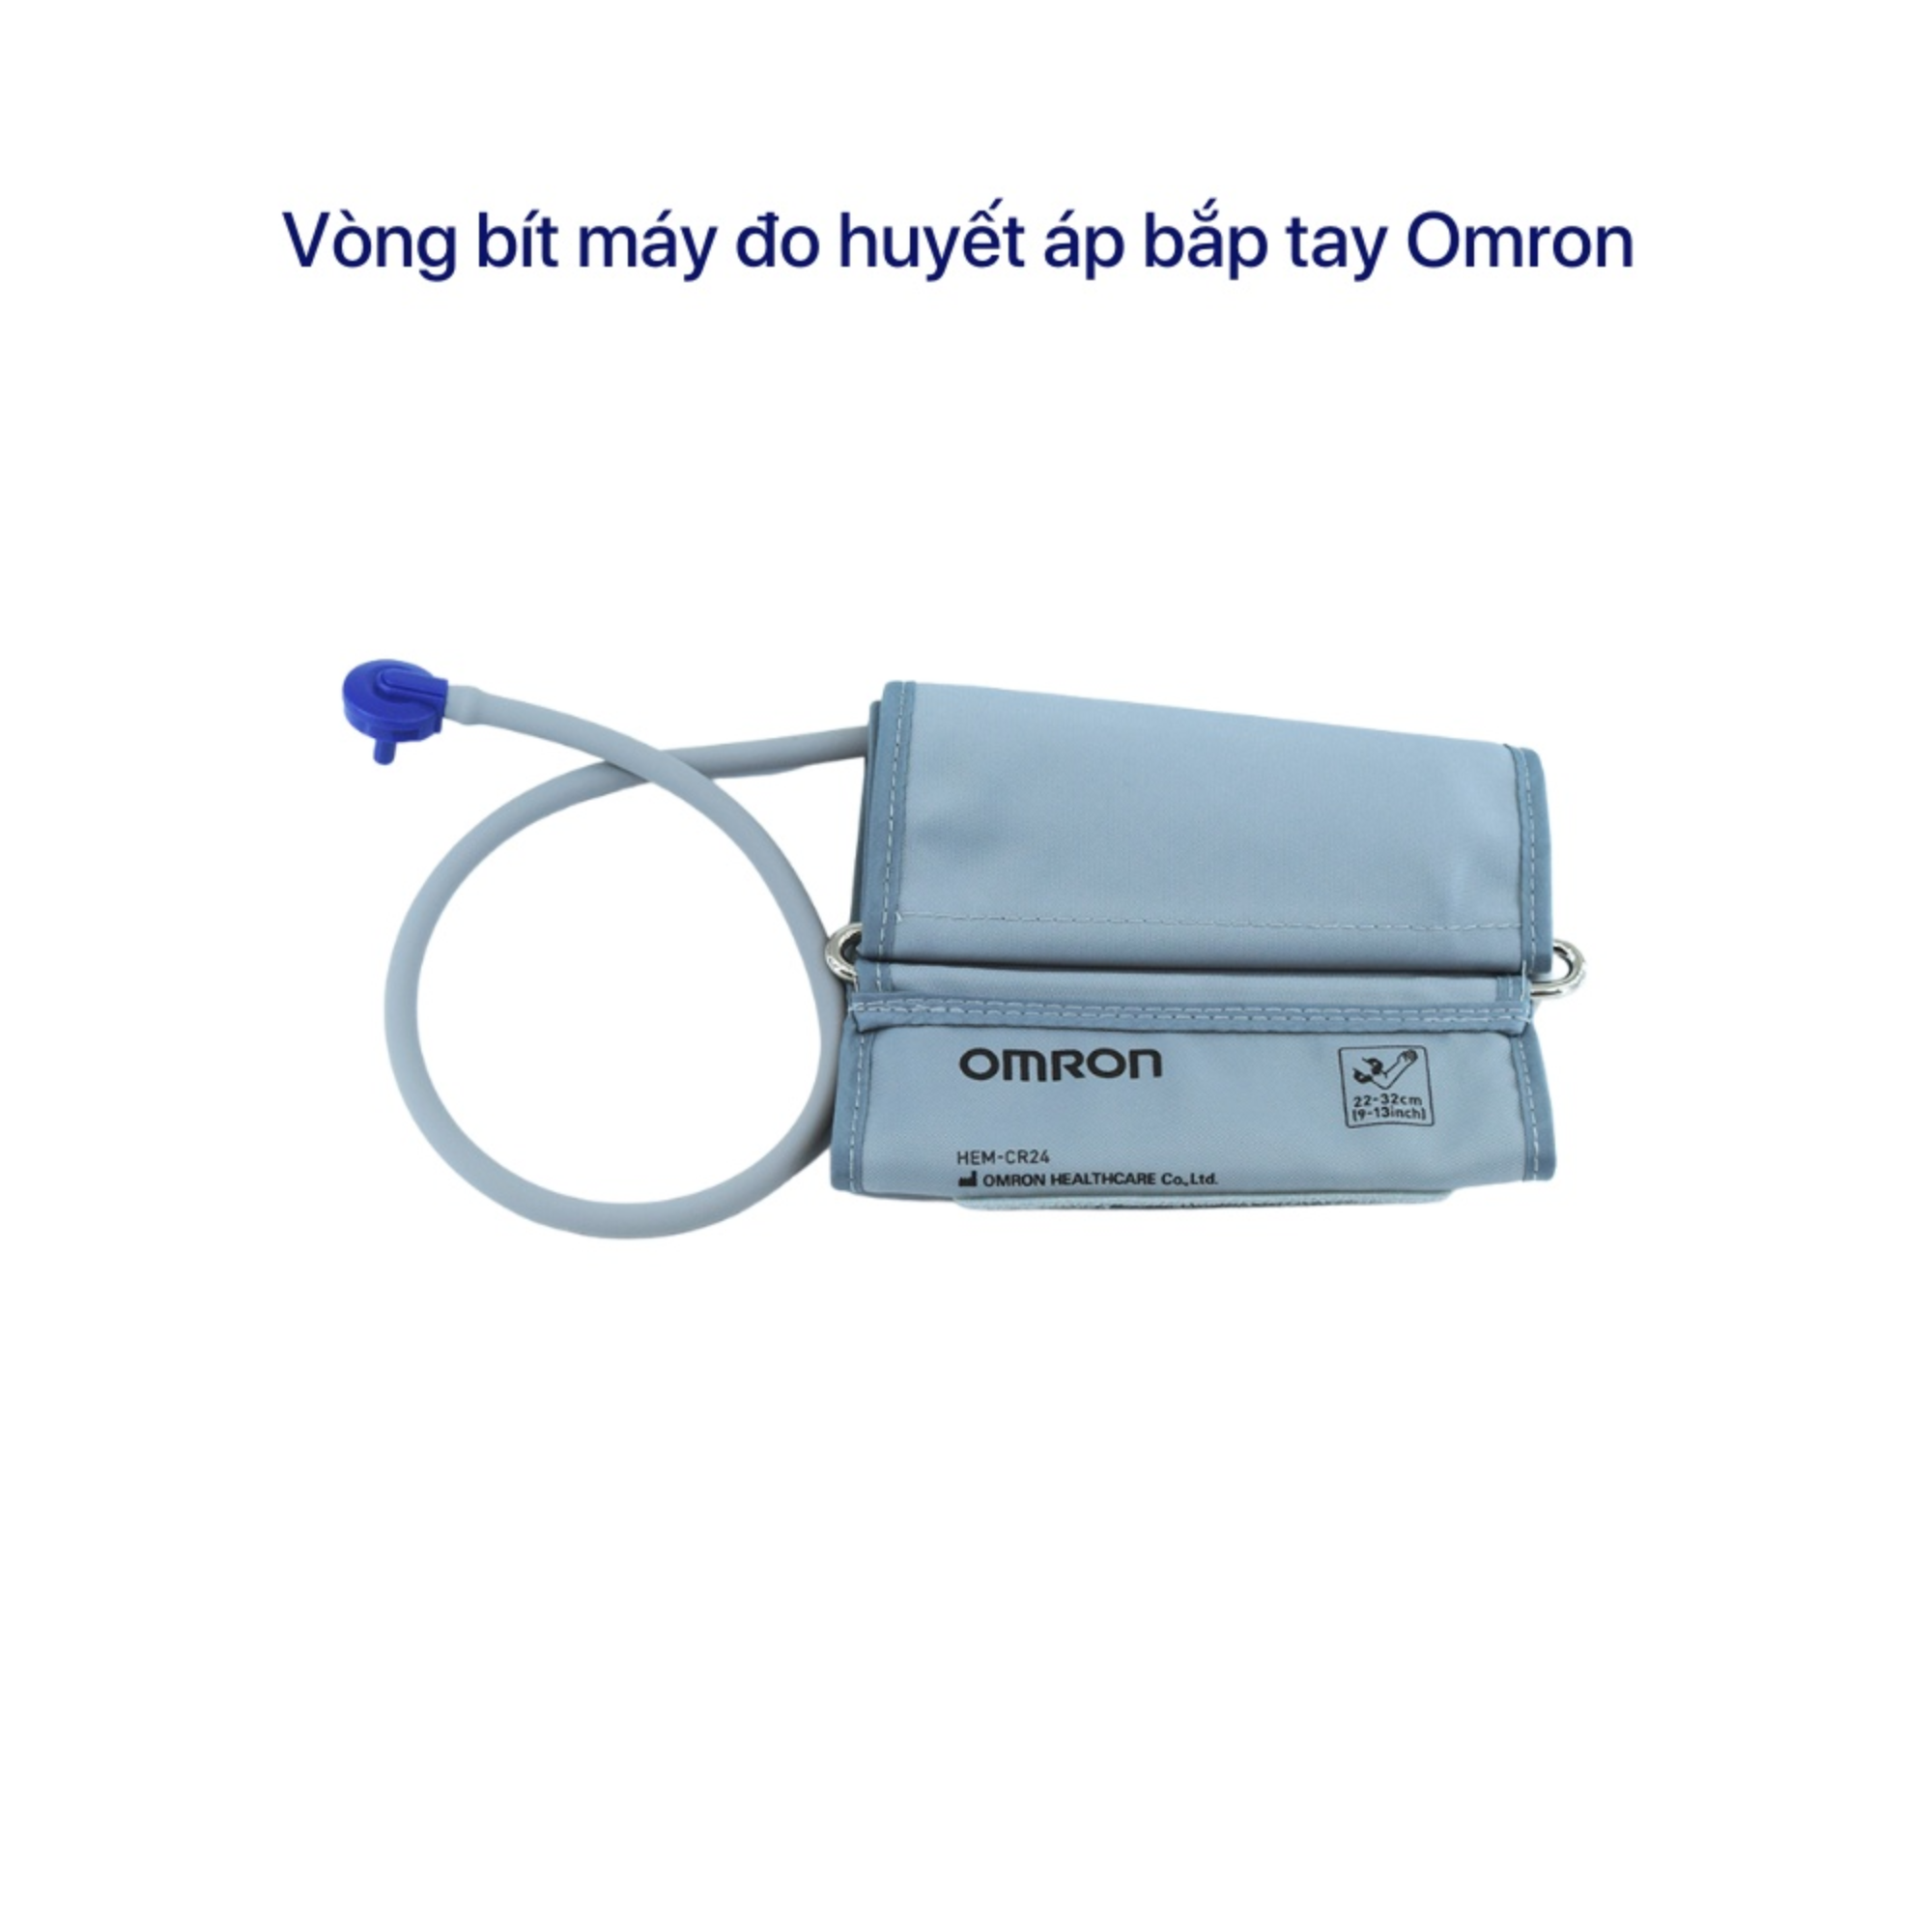 Vòng bít máy đo huyết áp bắp tay Omron